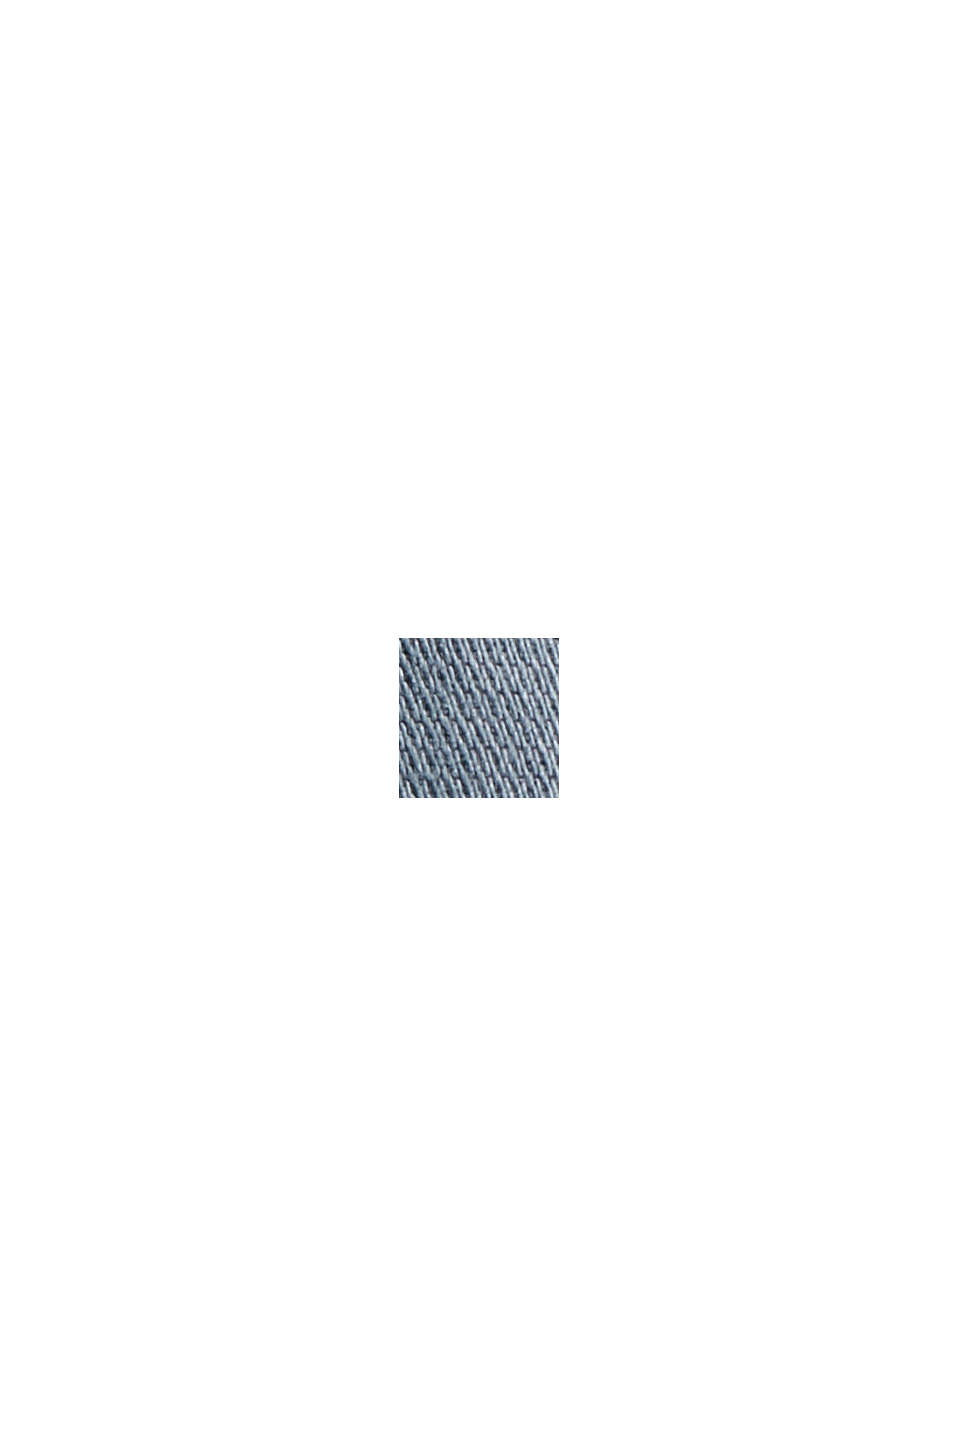 CURVY - Vaqueros elásticos con detalle de cremallera, GREY BLUE, swatch